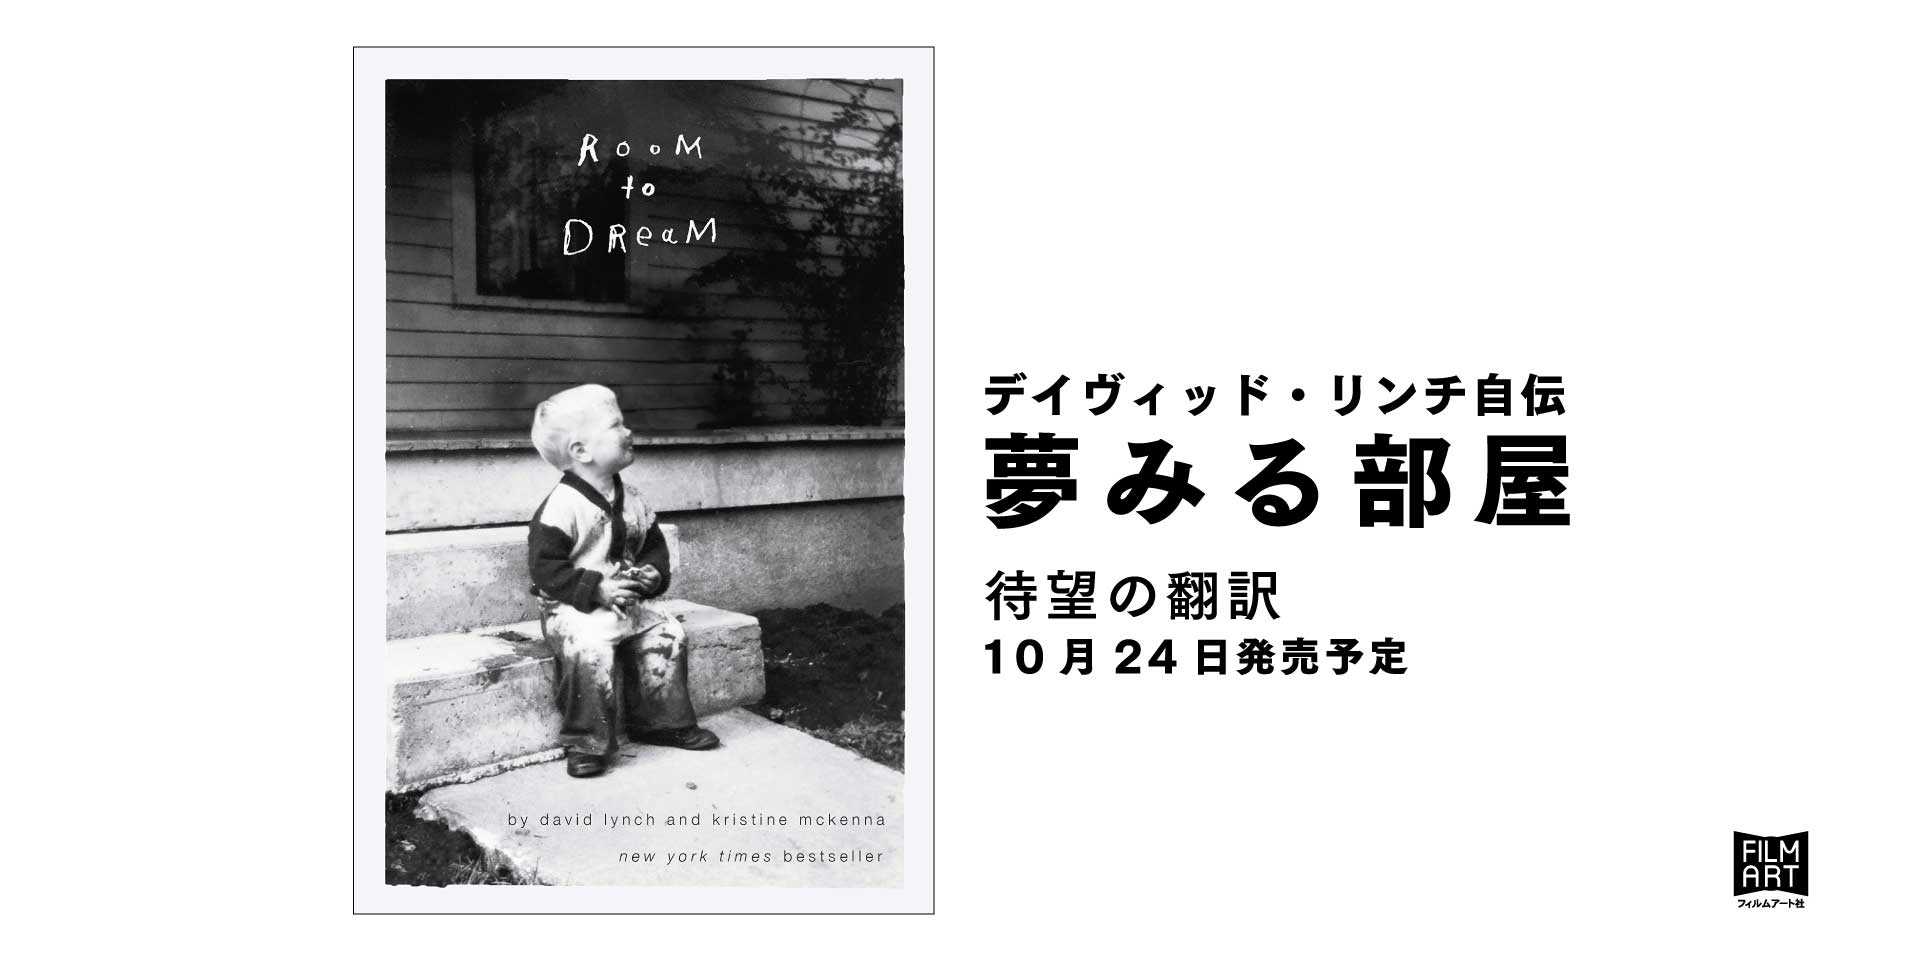 リンチの手書きによる日本語題字公開 デイヴィッド リンチ初の自伝 夢みる部屋 年10月24日発売予定 ご予約受付中 かみのたね